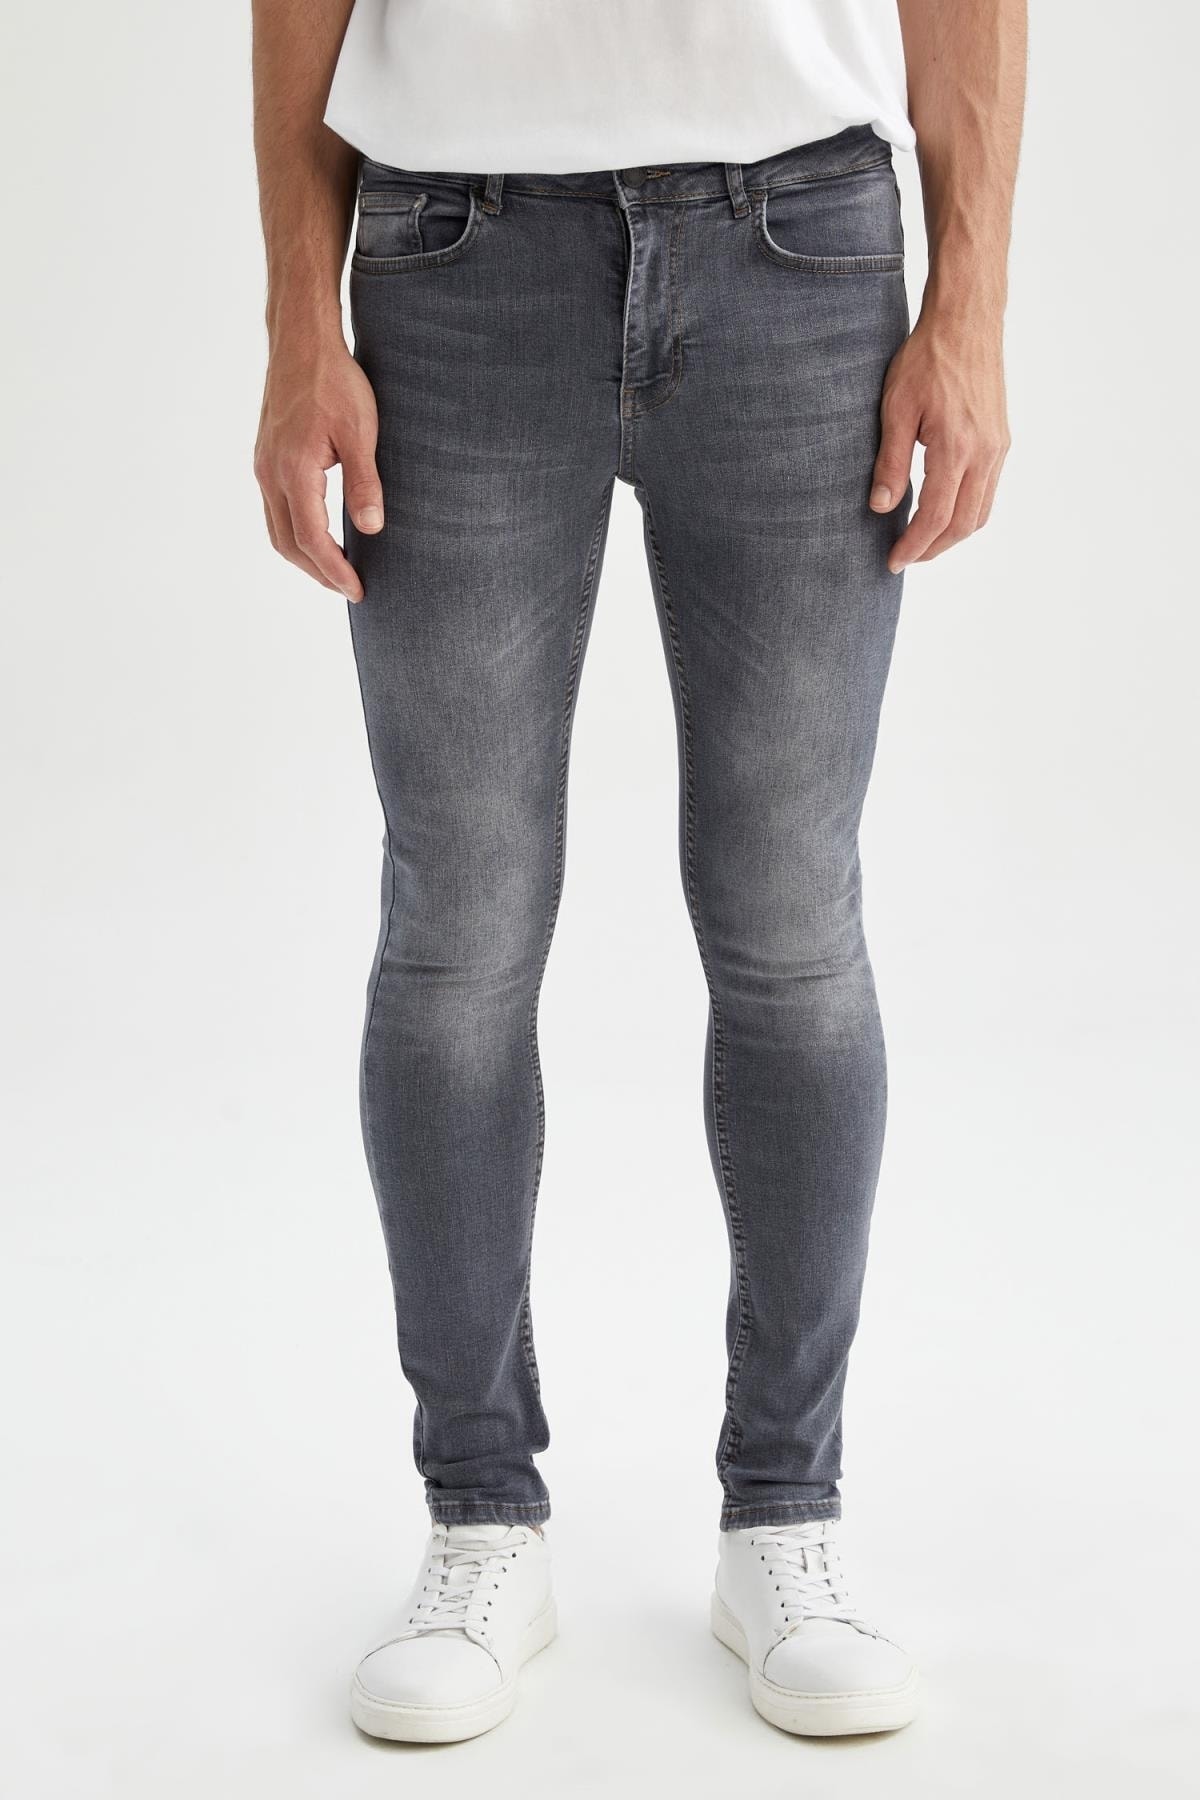 DeFacto Jeans Grau Skinny